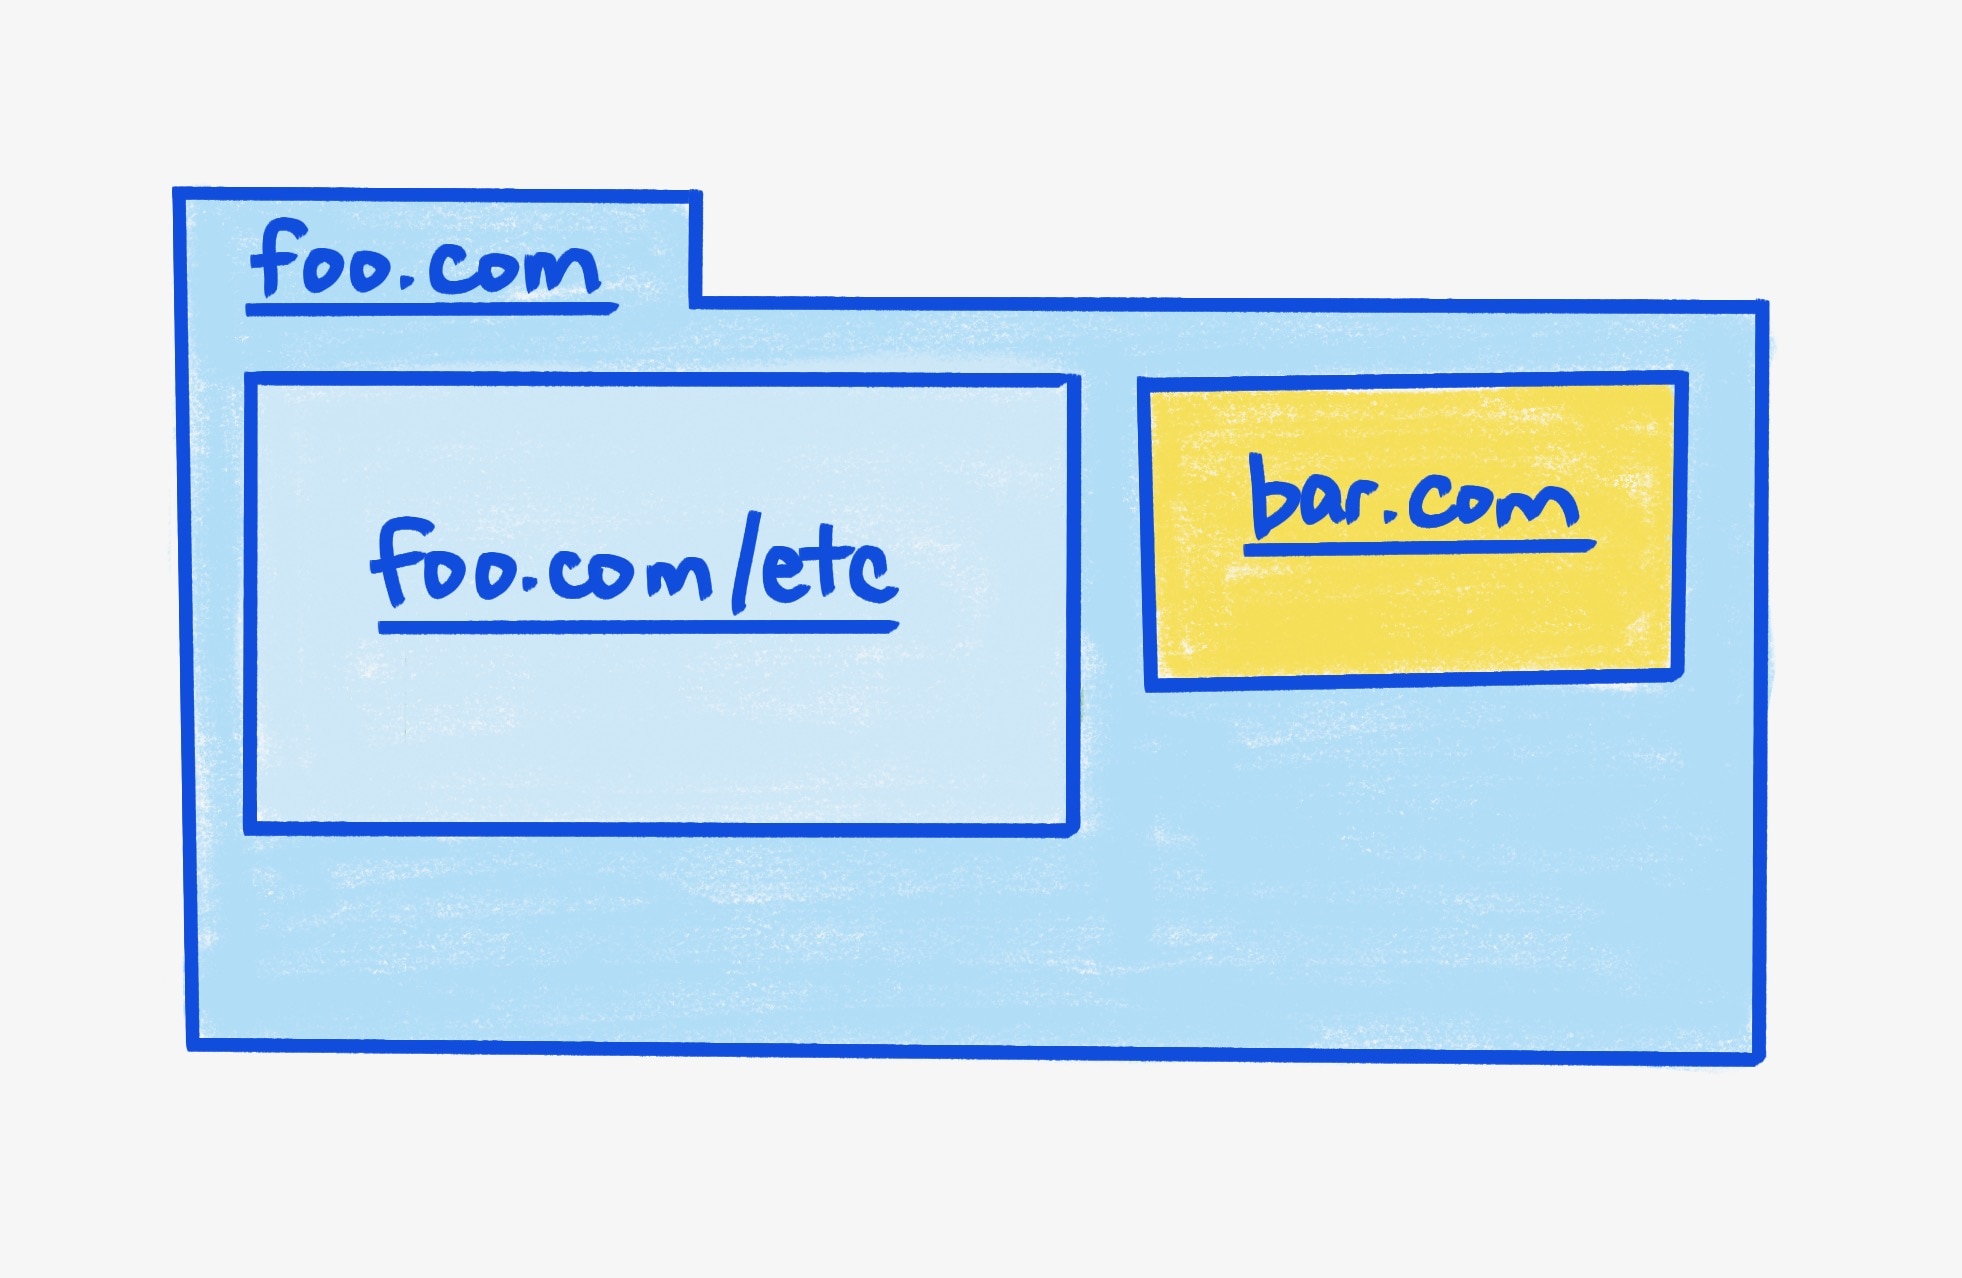 Nadrzędna ramka foo.com zawierająca dwa elementy iframe.